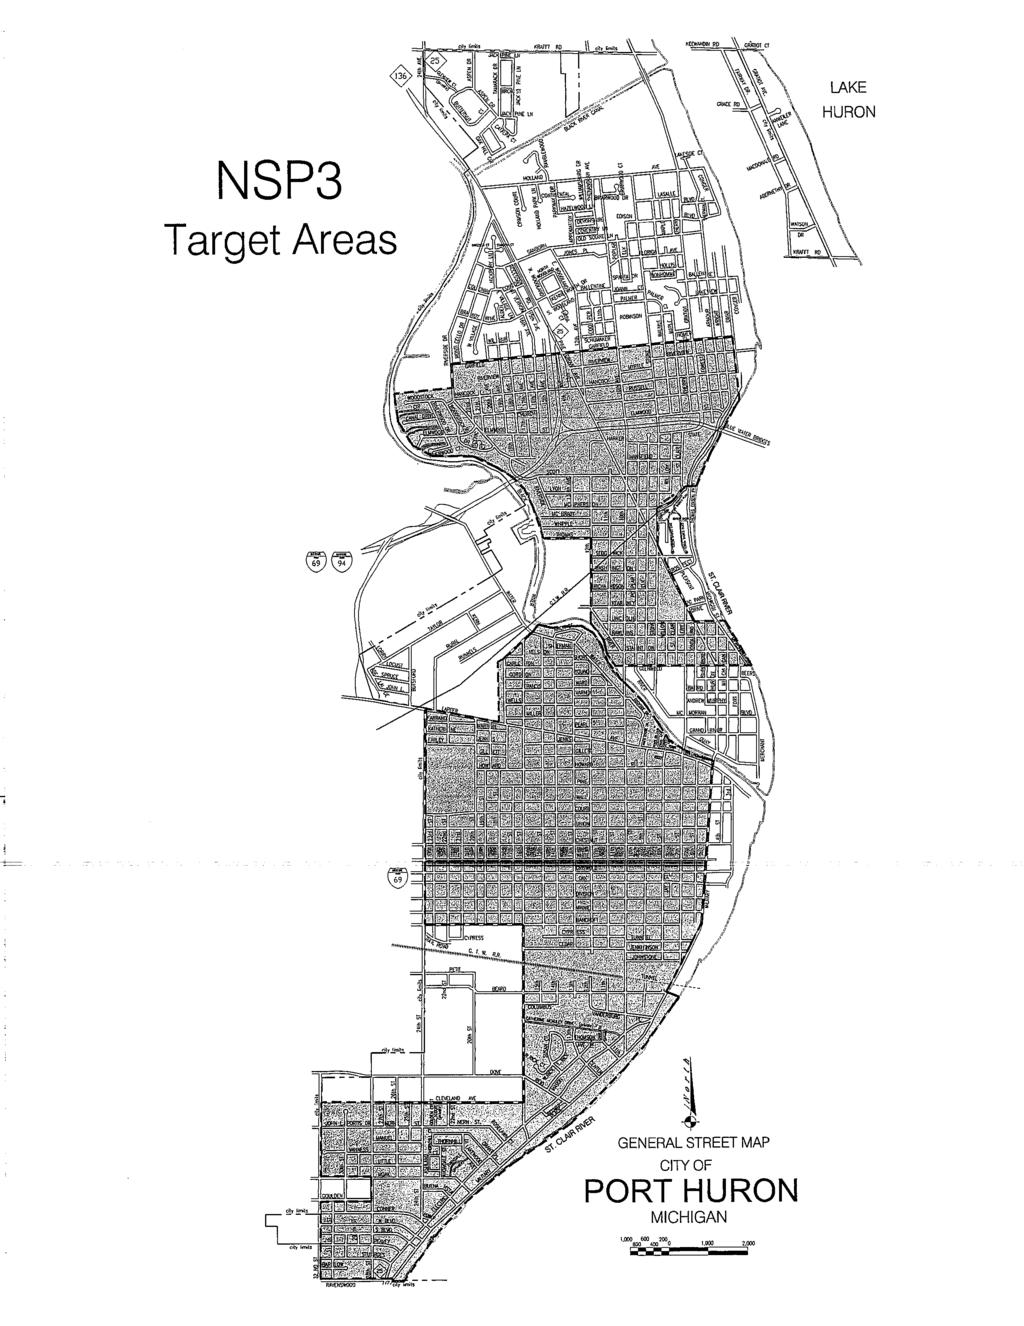 LAKE HURON NSP3 Target Areas